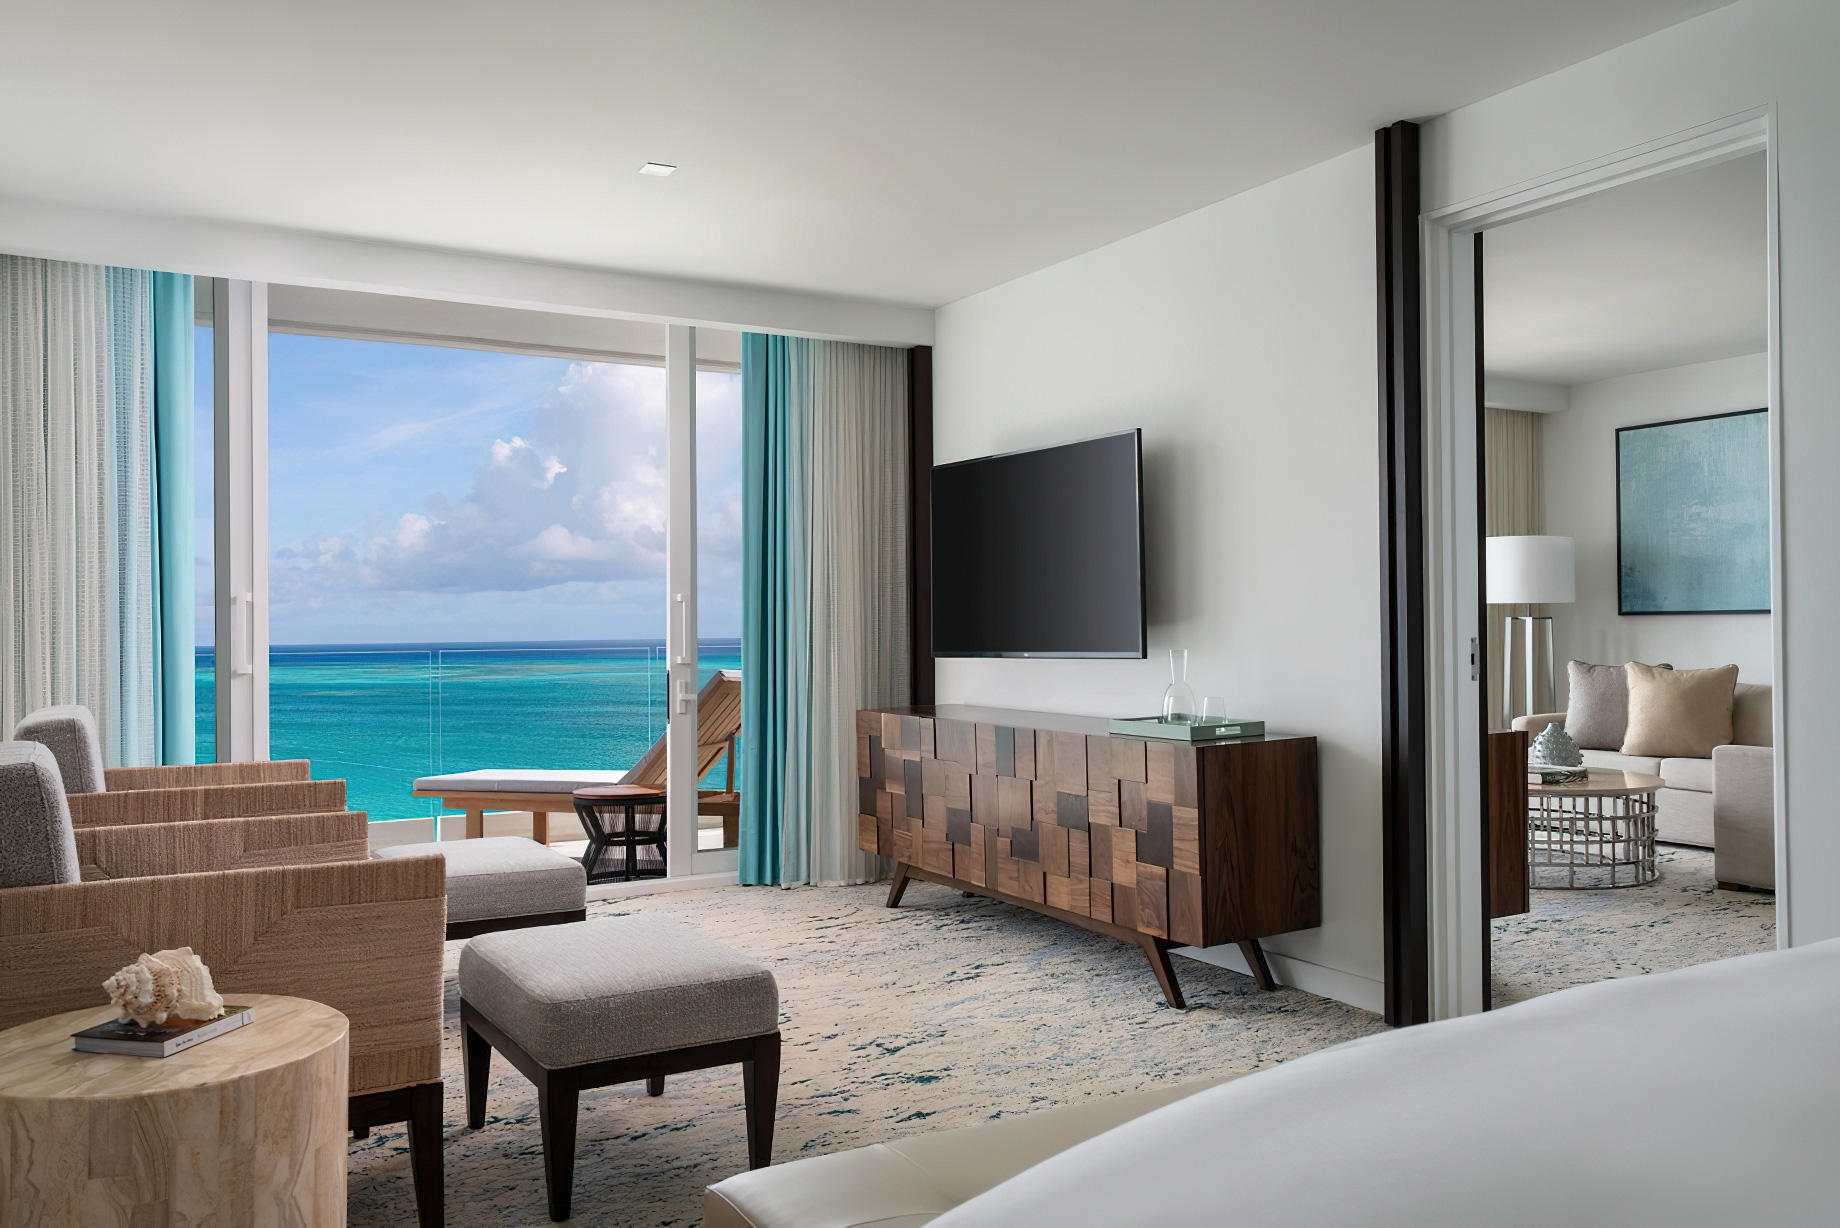 The Ritz-Carlton, Turks & Caicos Resort – Providenciales, Turks and Caicos Islands – Executive Suite Ocean View